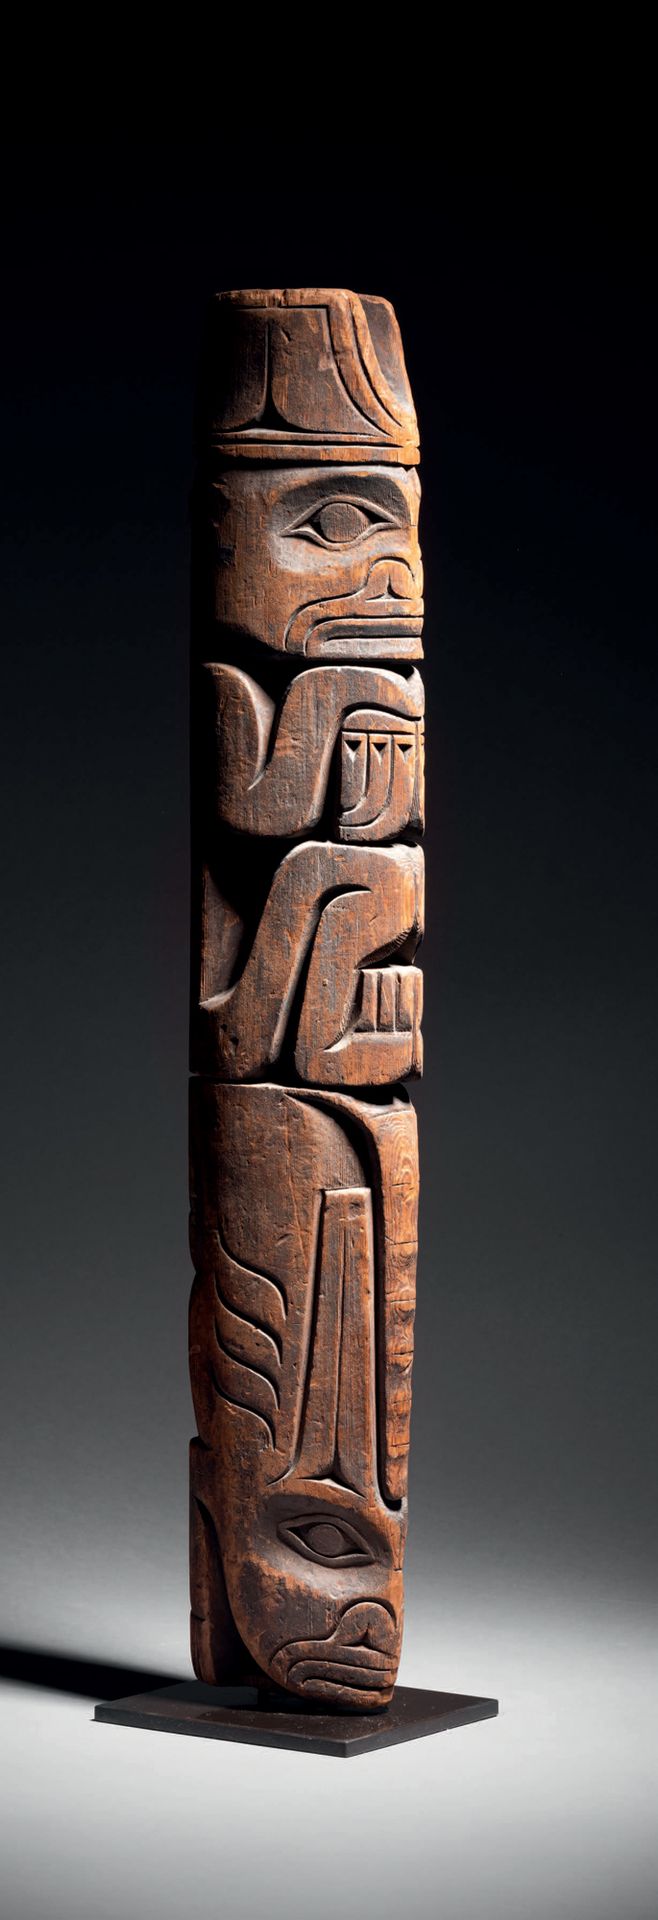 Null Totempfahl, British Columbia, Kanada
Frühes 20. Jahrhundert
Holzschnitzerei&hellip;